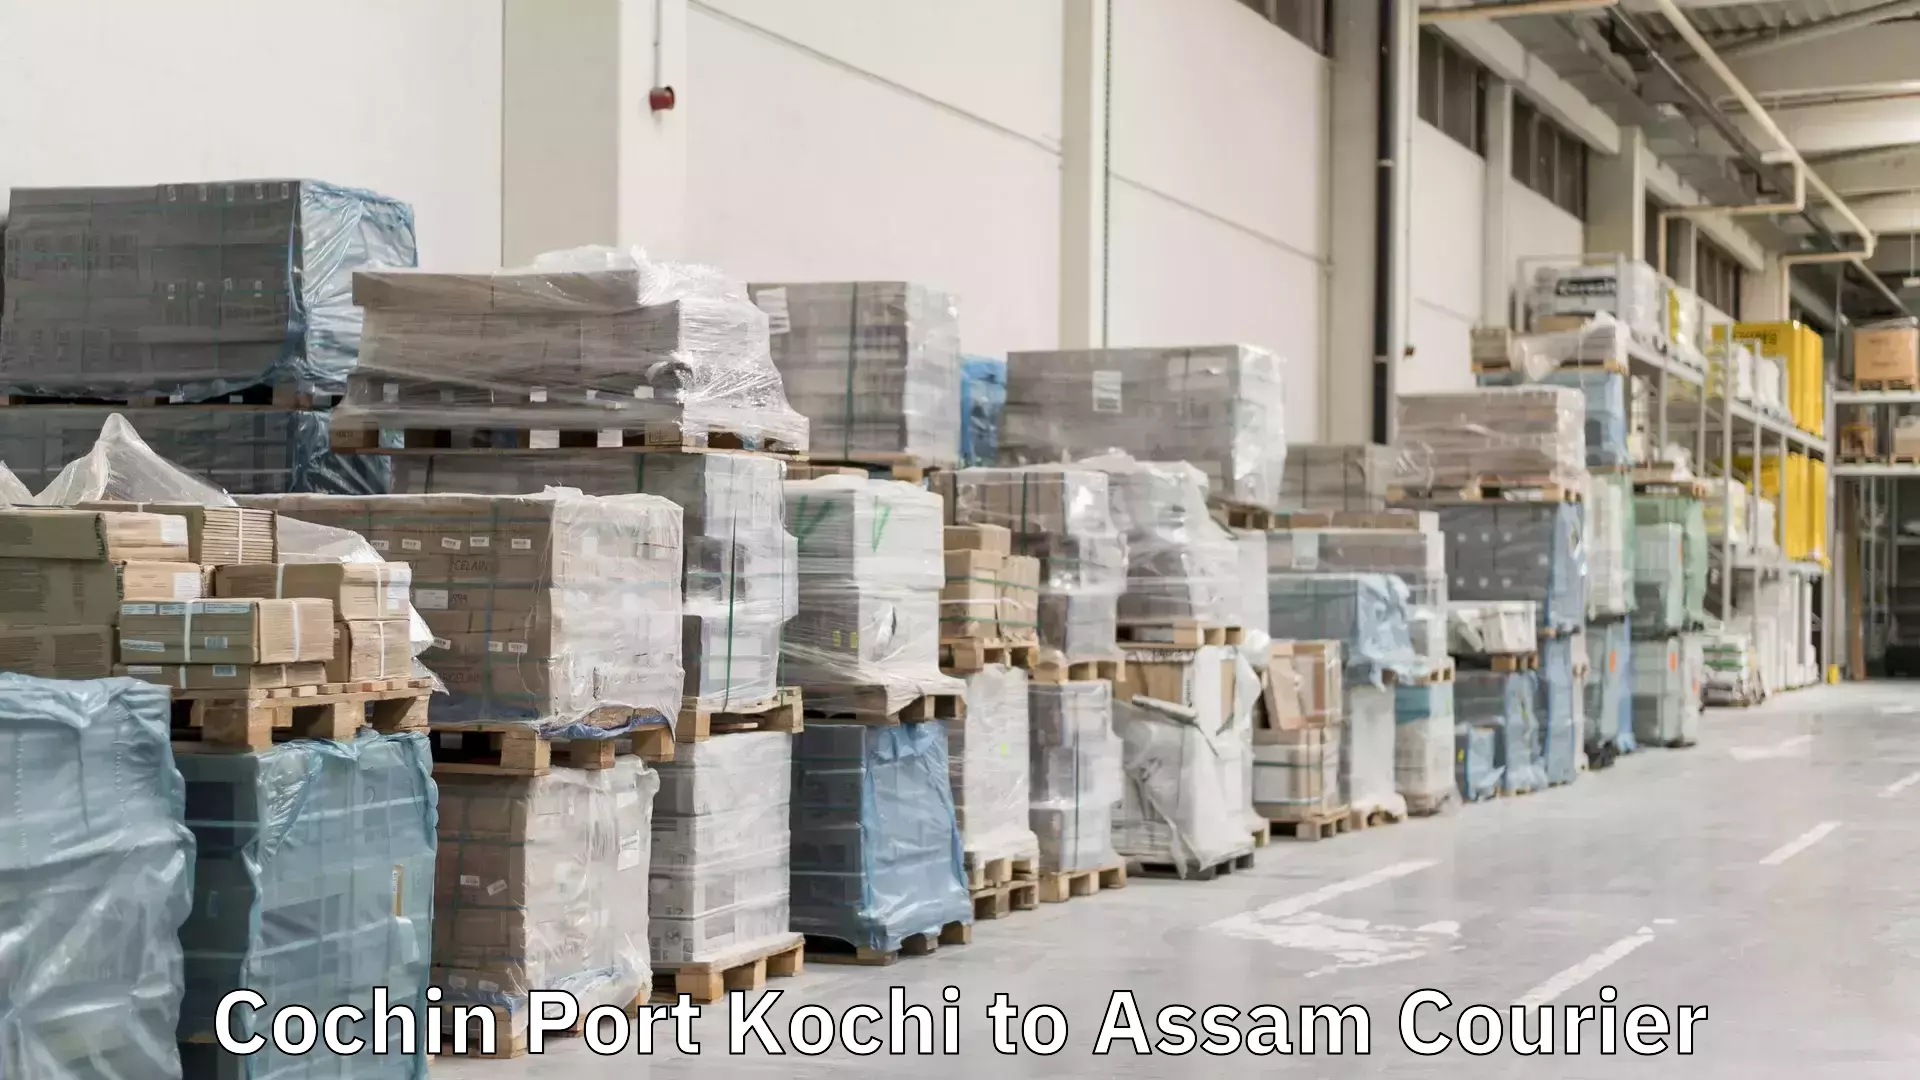 Express package handling Cochin Port Kochi to Assam